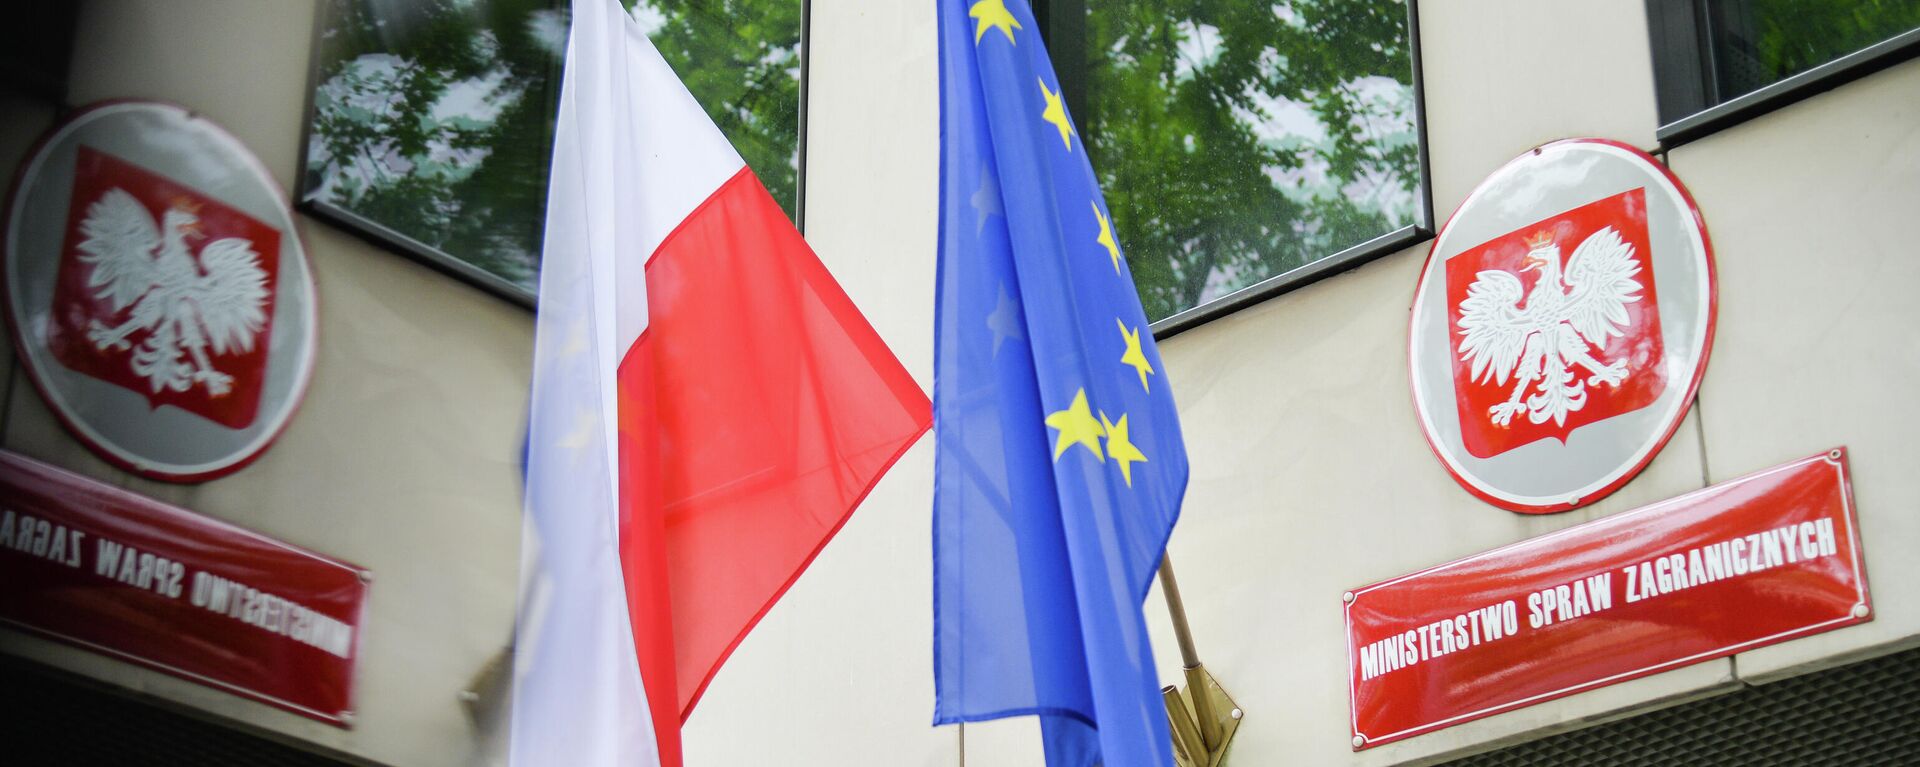 Государственный флаг Польши и флаг Евросоюза на здании Министерства иностранных дел Польши в Варшаве - Sputnik Узбекистан, 1920, 15.06.2021